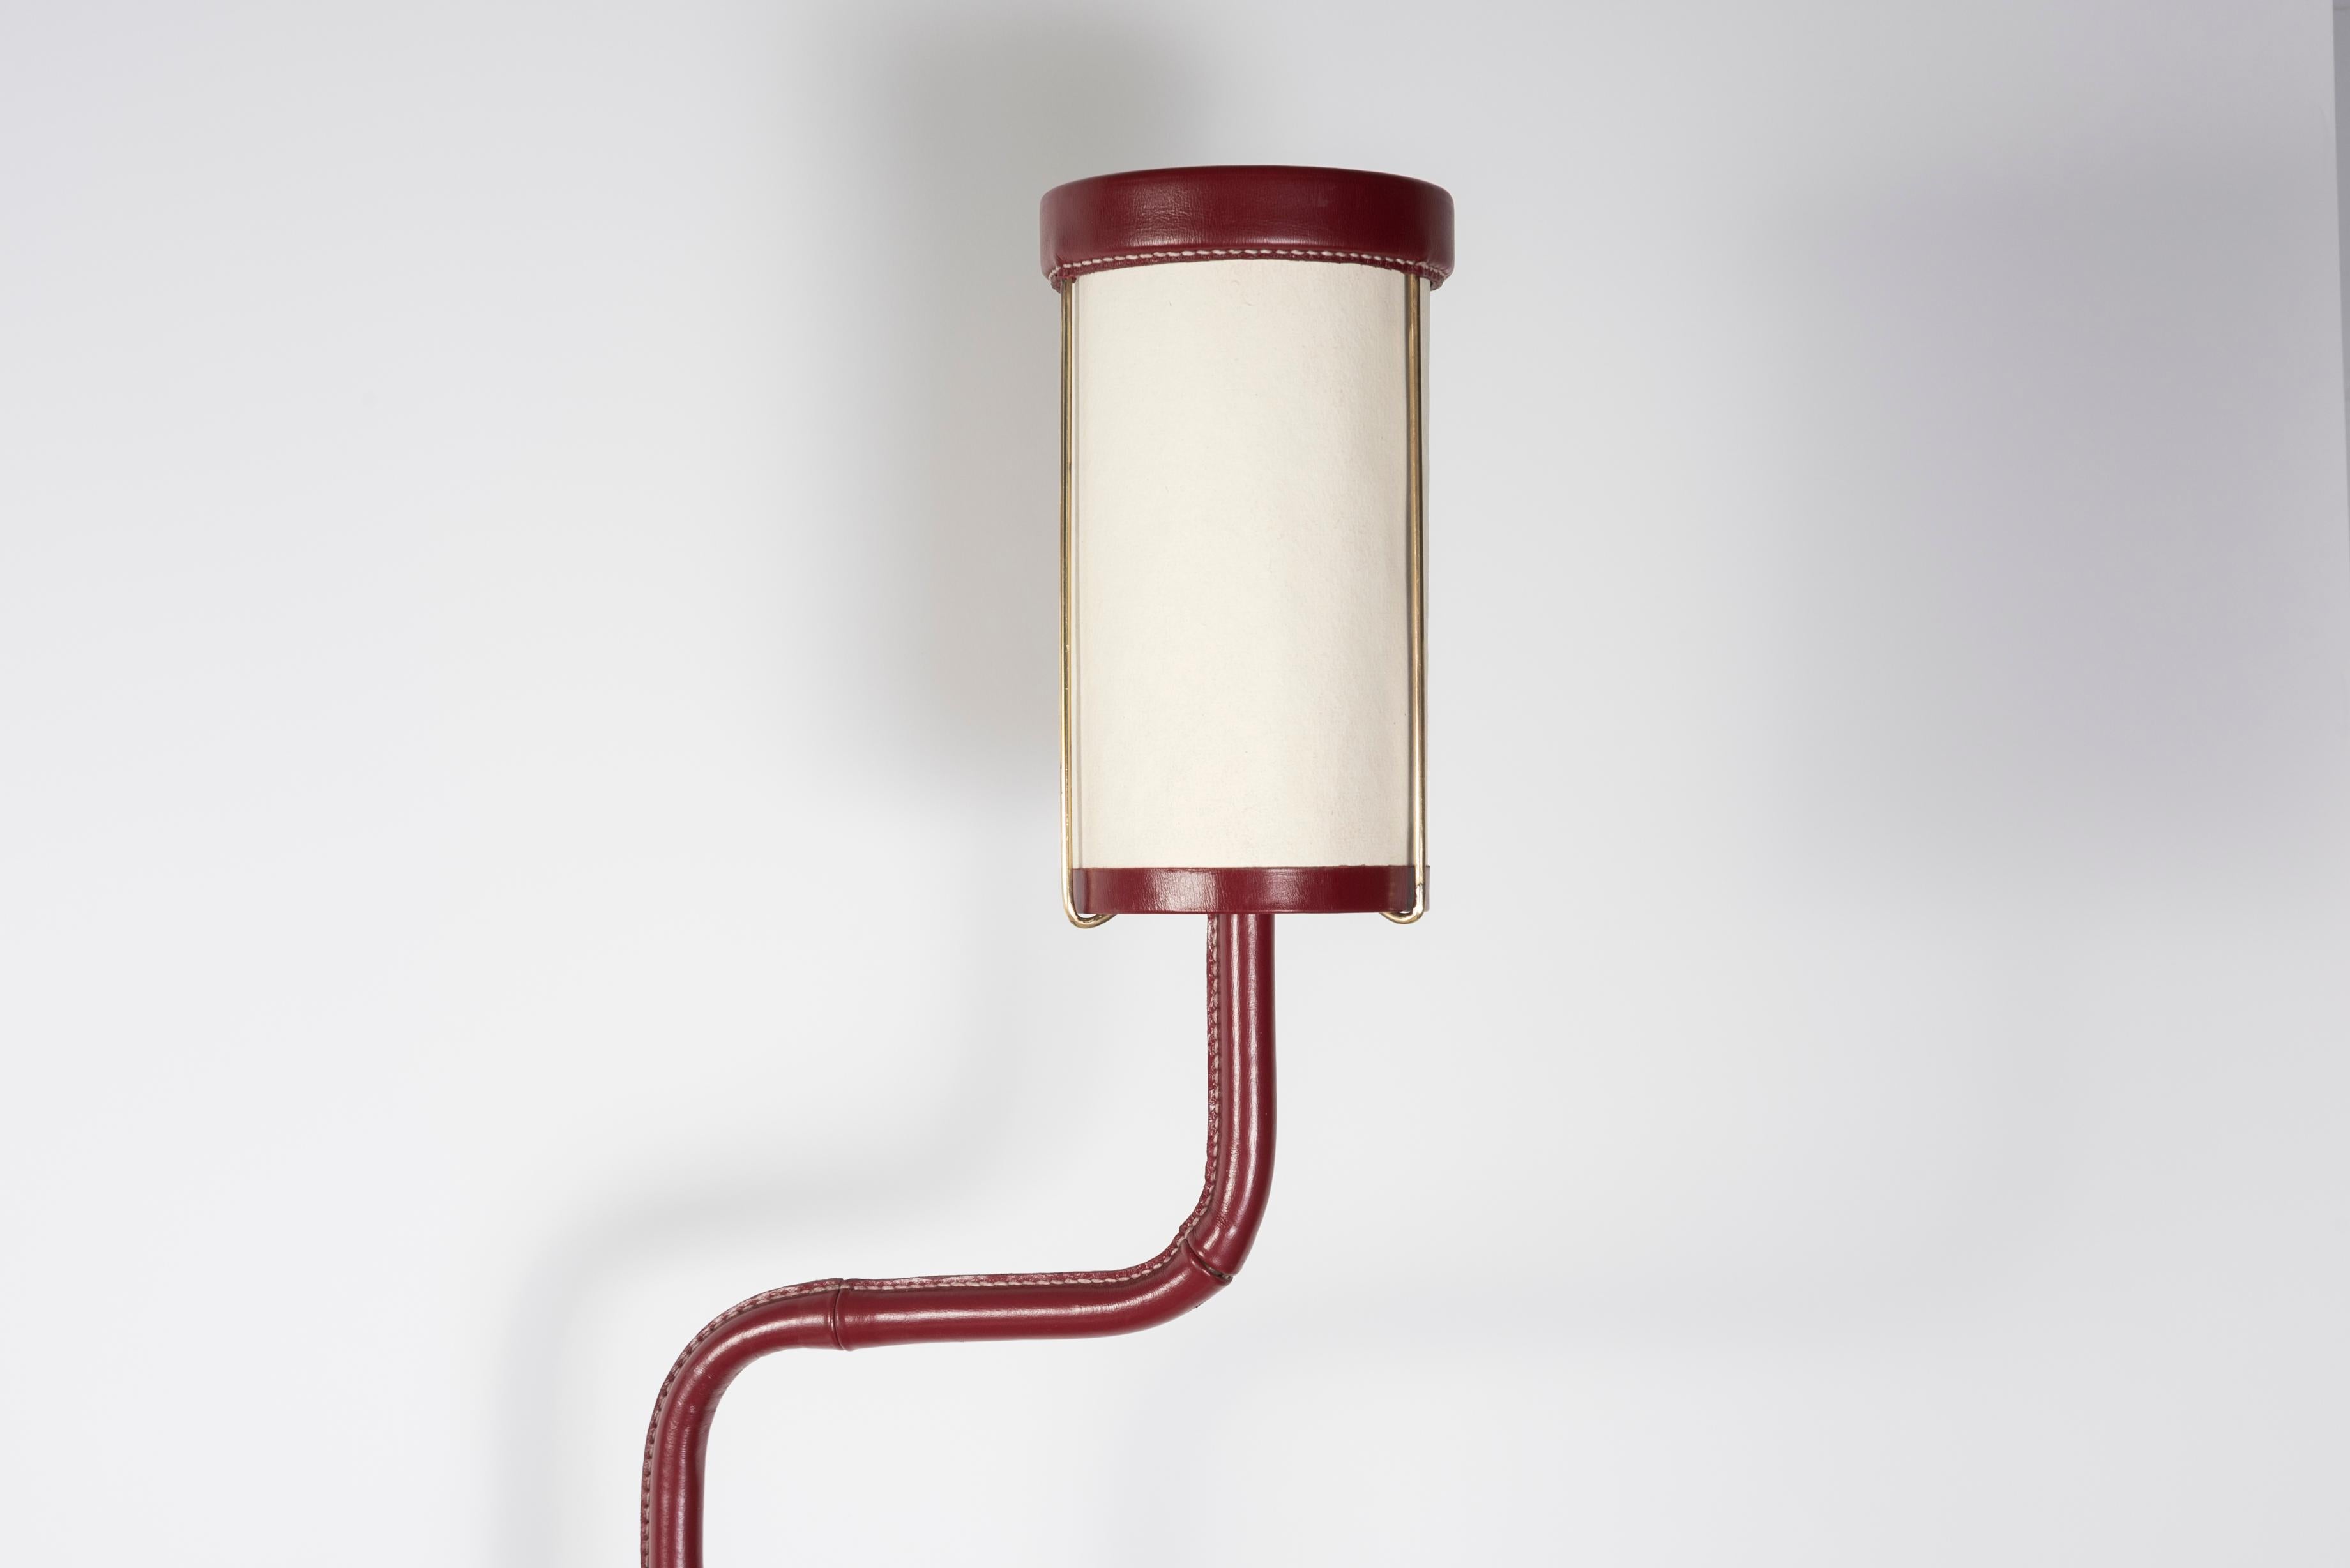 Seltener kleiner genähter Ledertisch von Jacques Adnet
Die Lampe kann auf der linken oder rechten Seite angebracht werden.
Die Lampe kann auch entfernt werden.
